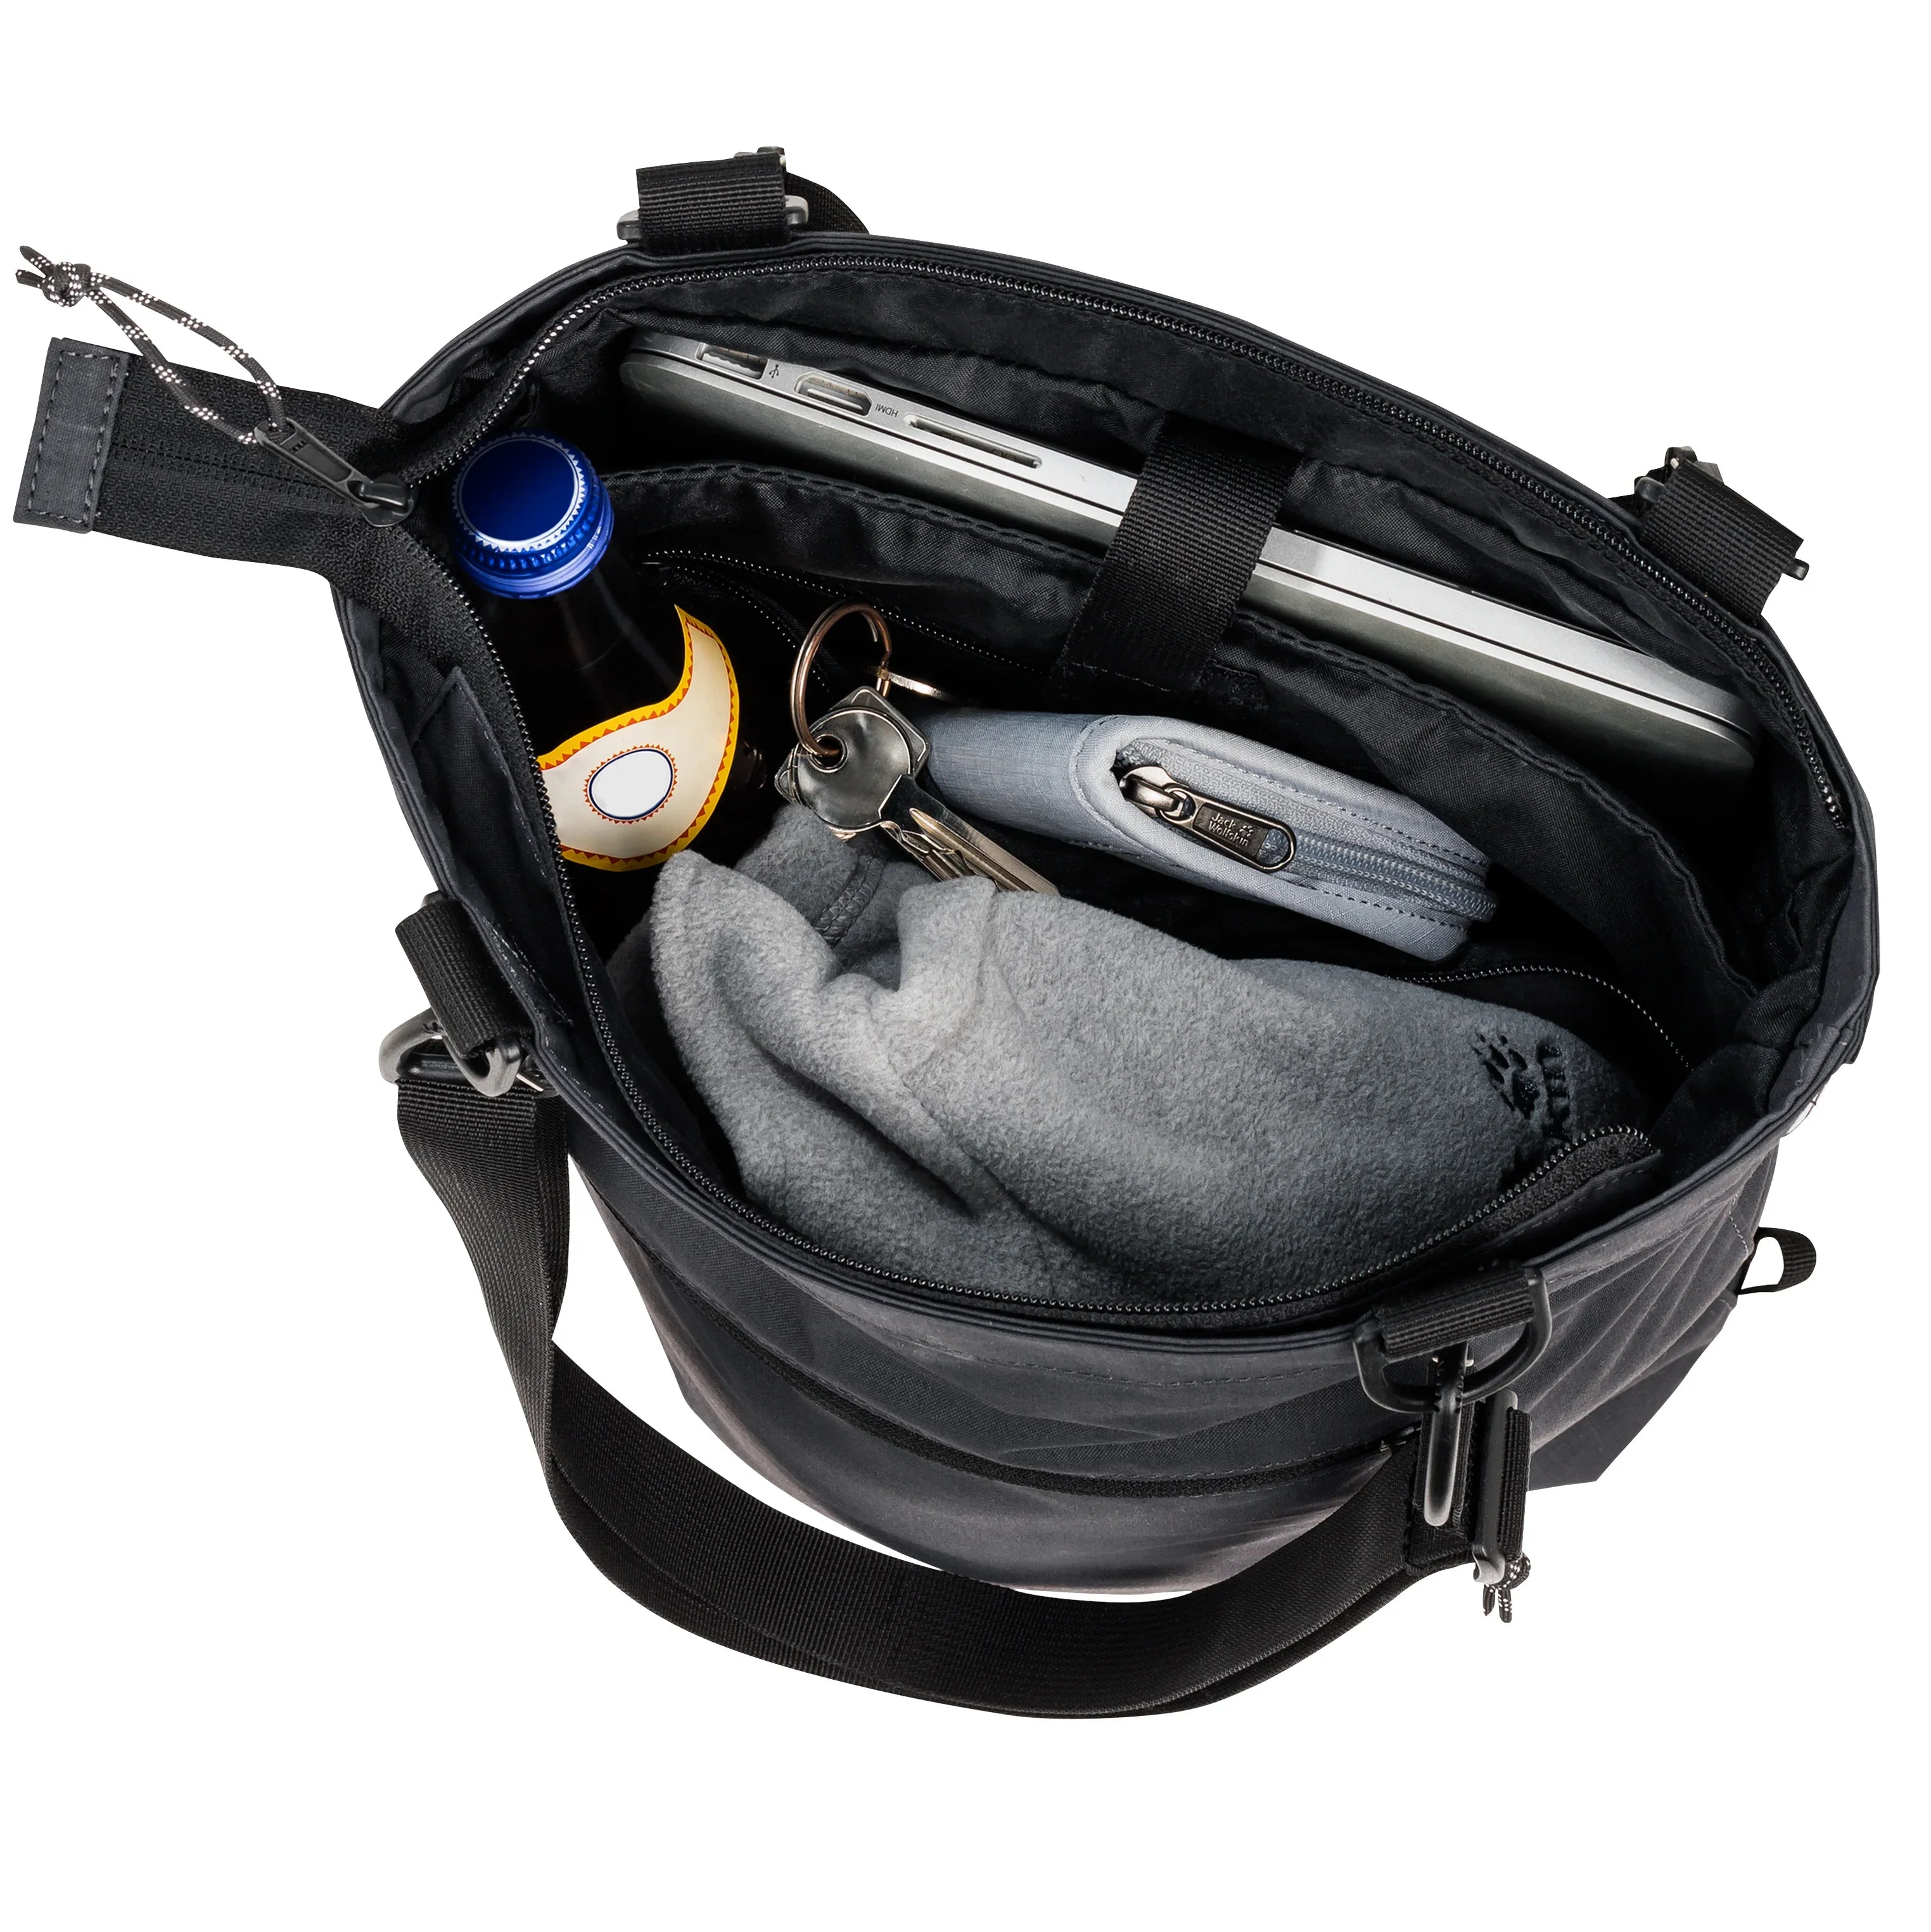 Jack Wolfskin Daypacks &amp; Bags 365 Tote Bag Shopper avec fonction sac à dos 38 cm - greenwood